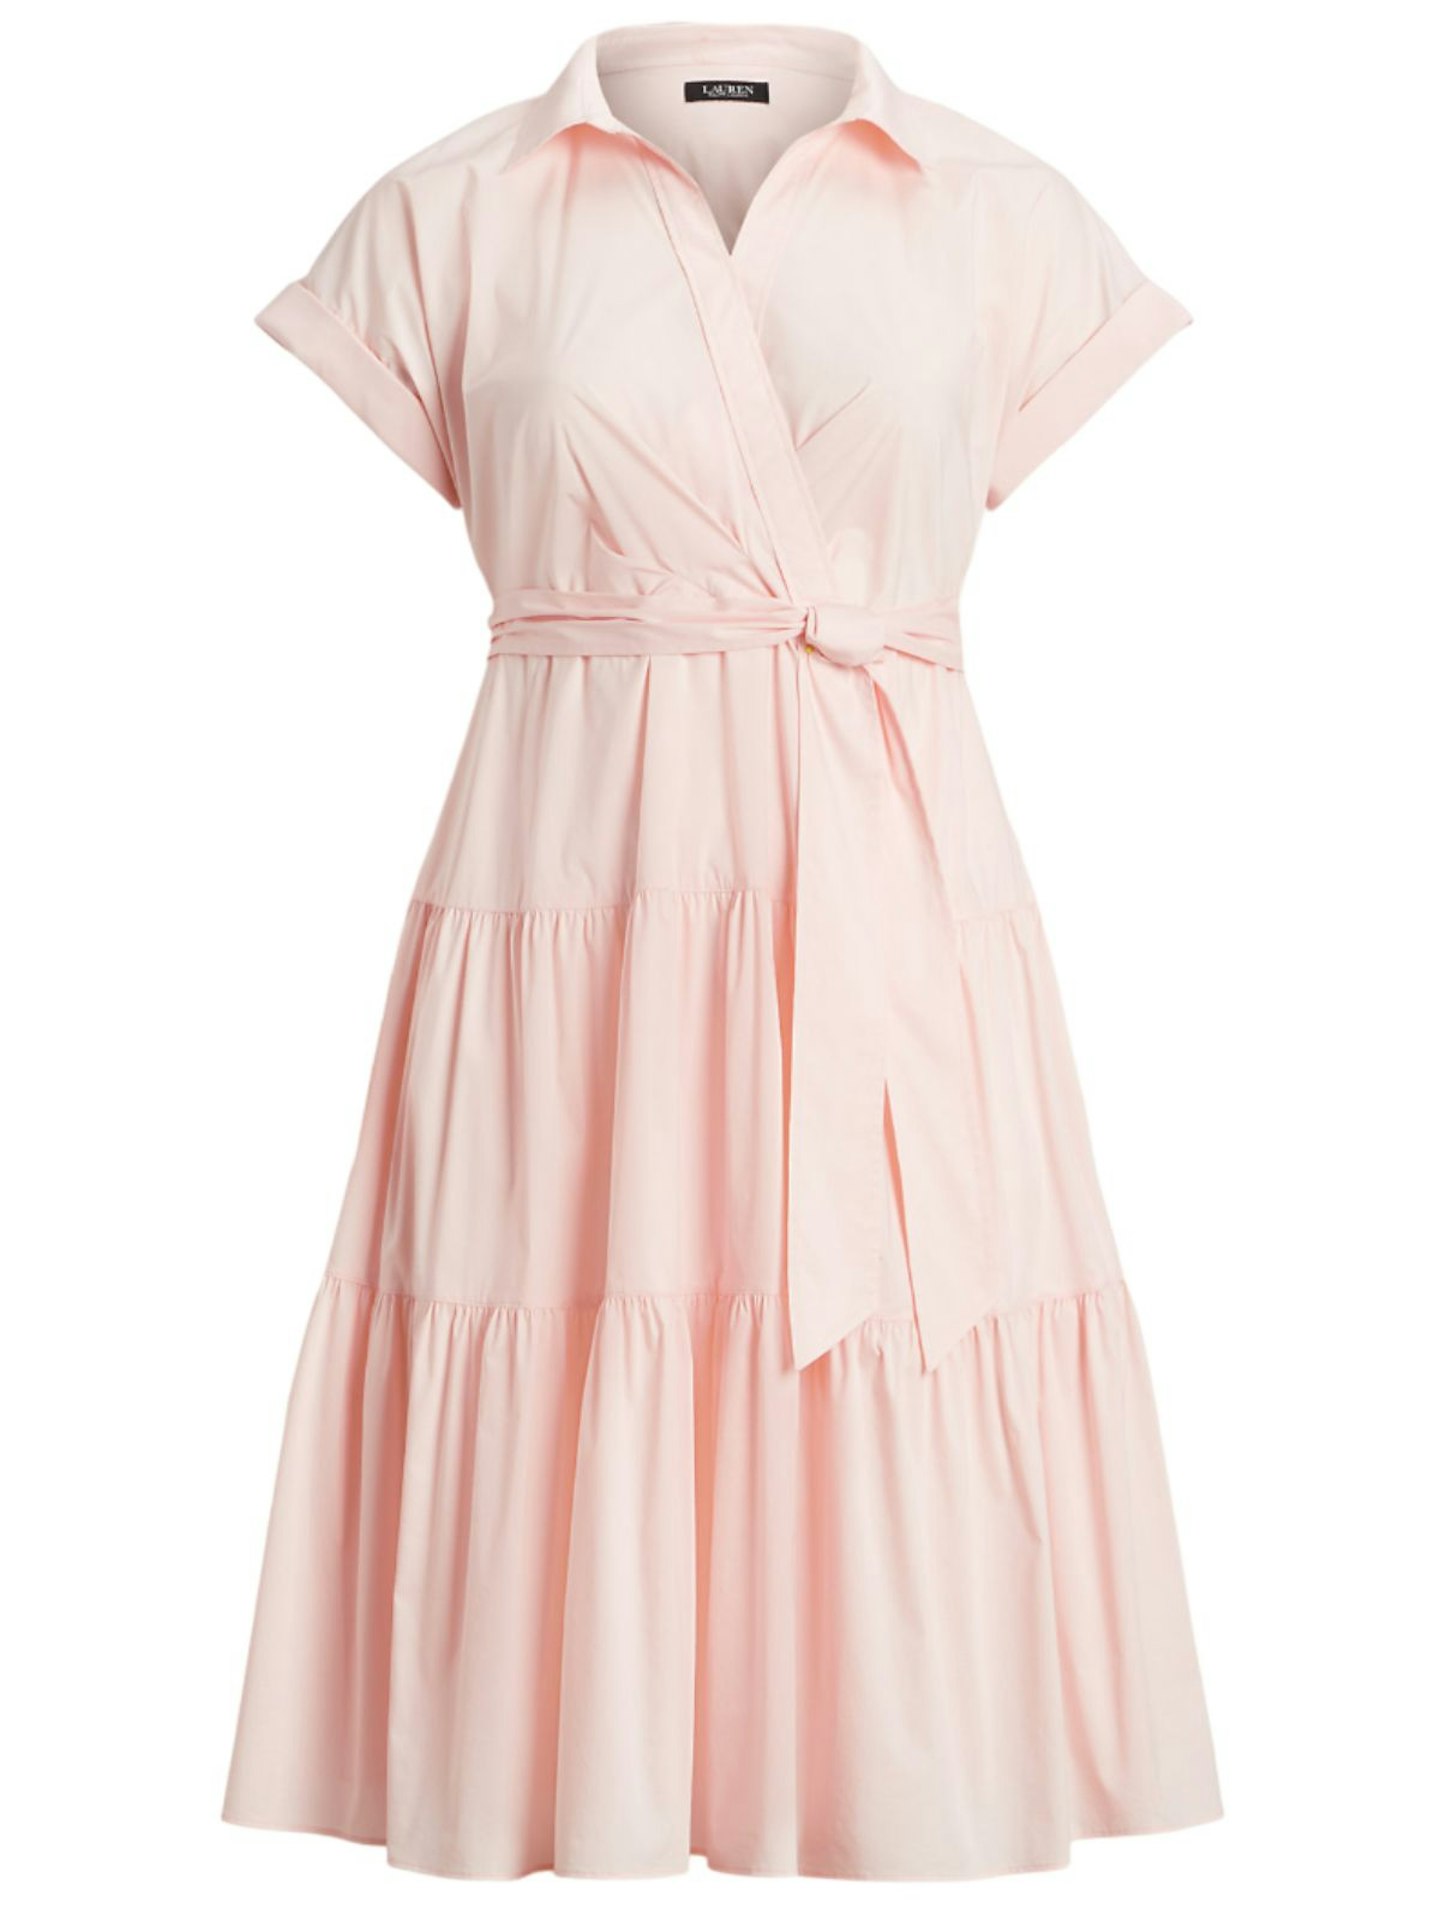 Ralph Lauren Belted Cotton-Blend Tiered Dress